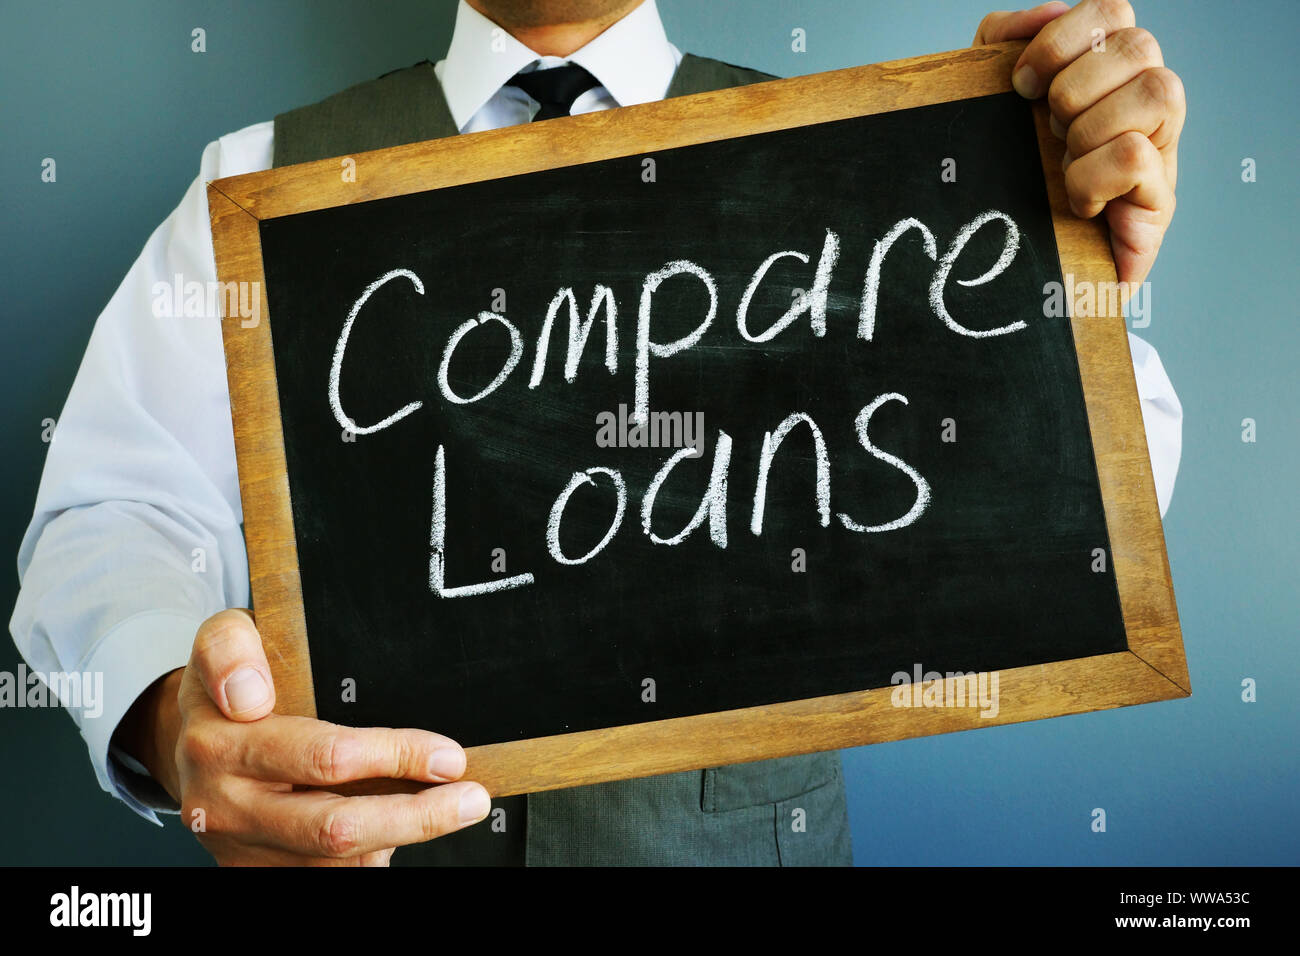 Compare loans inscription on a blackboard. Stock Photo